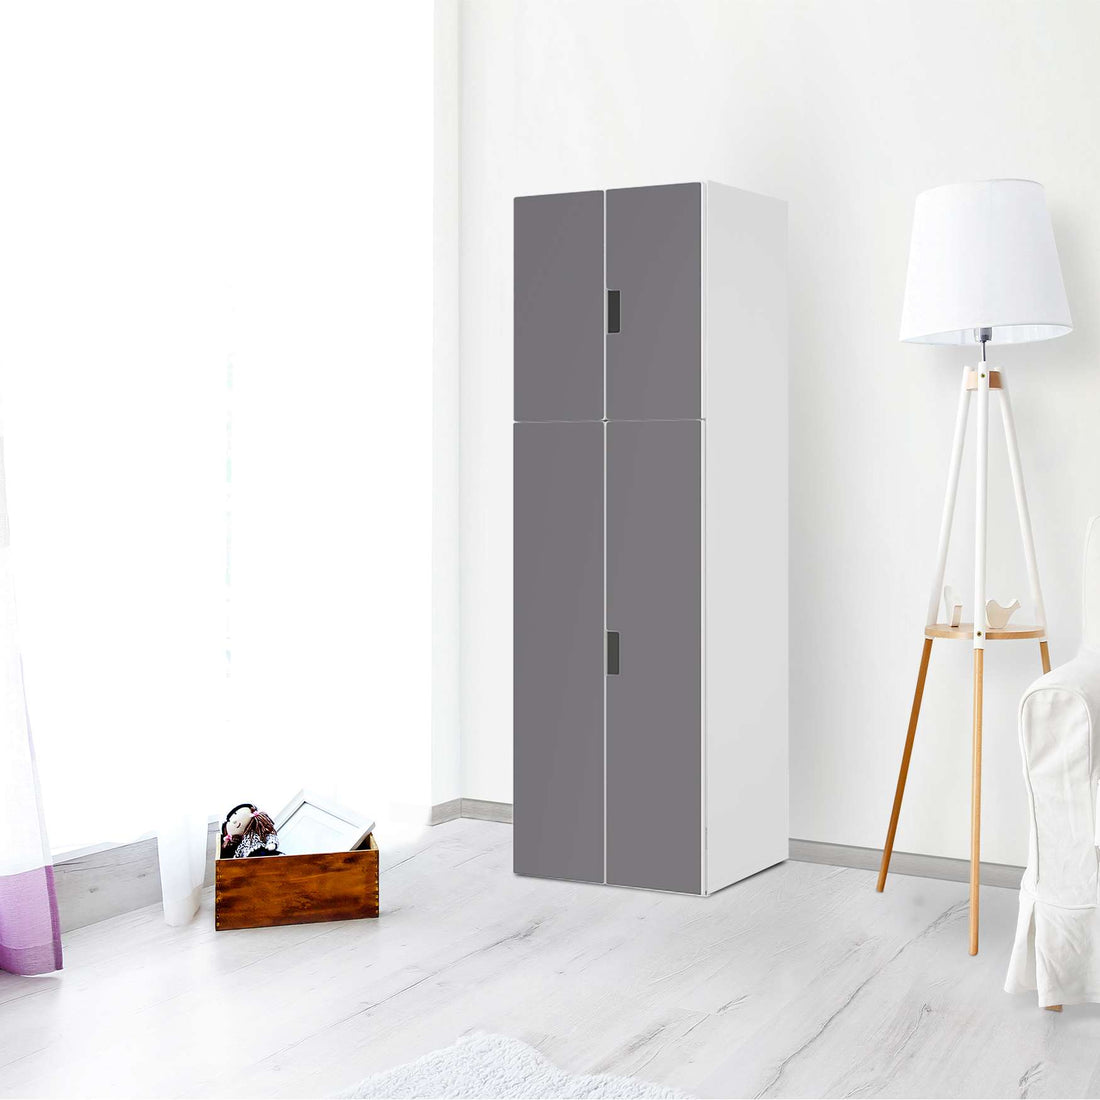 Selbstklebende Folie Grau Light - IKEA Stuva kombiniert - 2 große Türen und 2 kleine Türen (Kombination 2) - Wohnzimmer